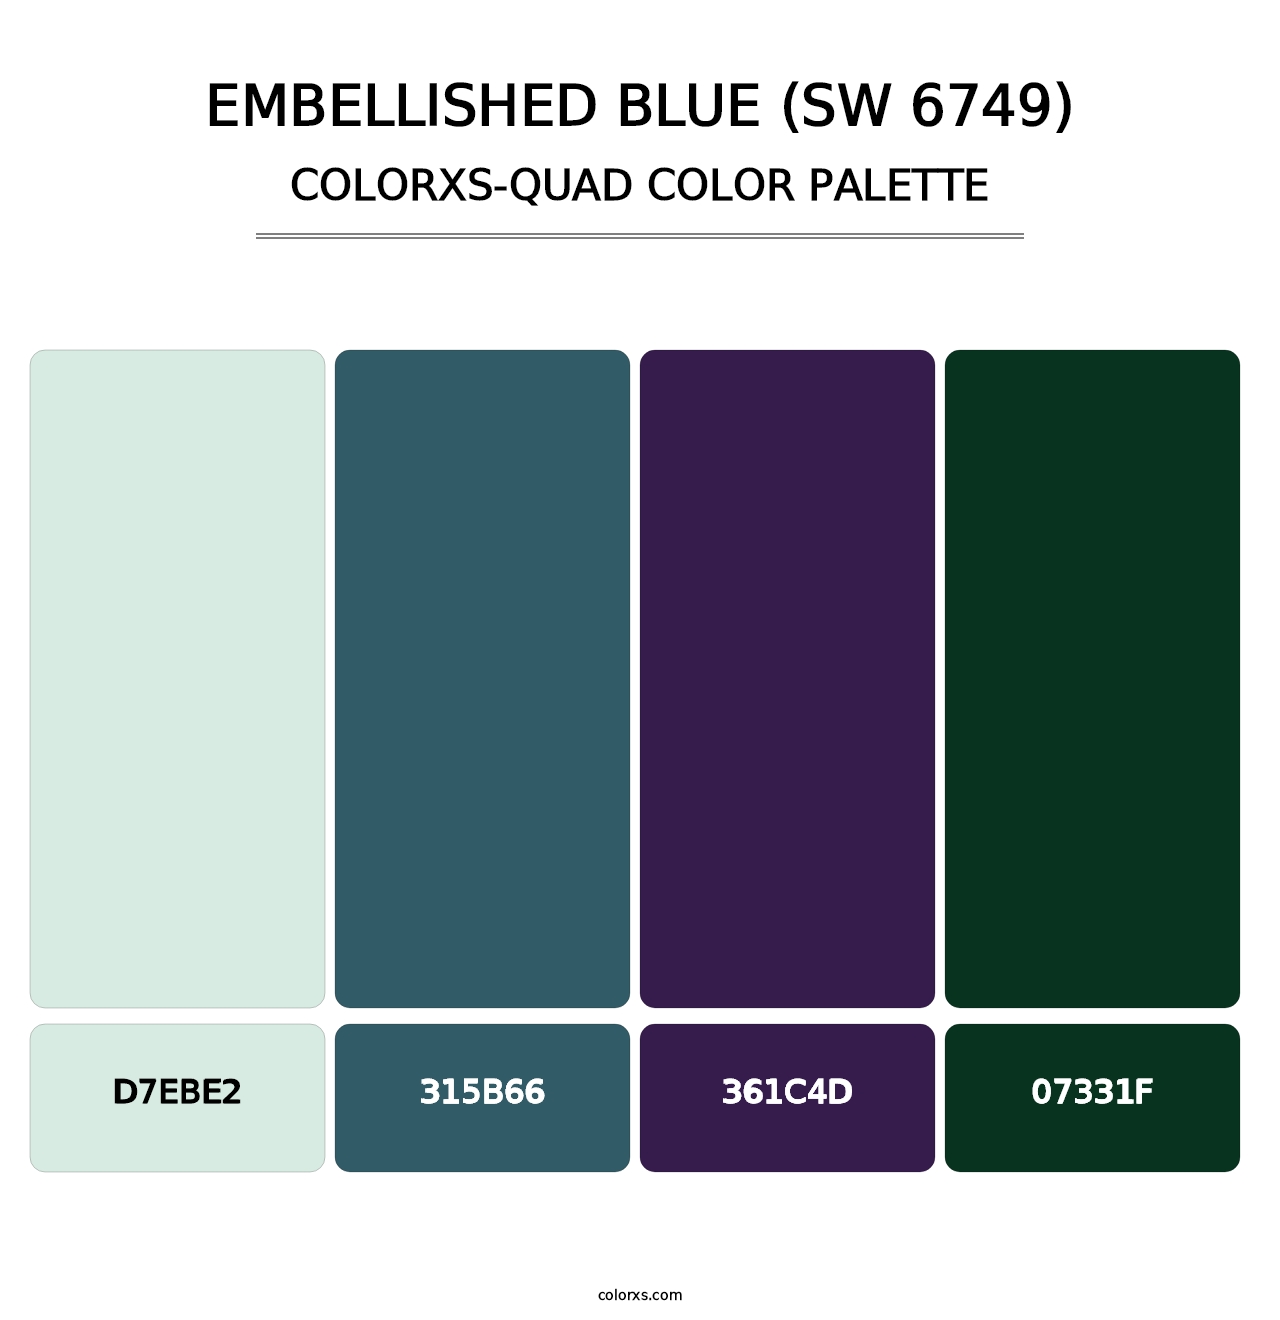 Embellished Blue (SW 6749) - Colorxs Quad Palette